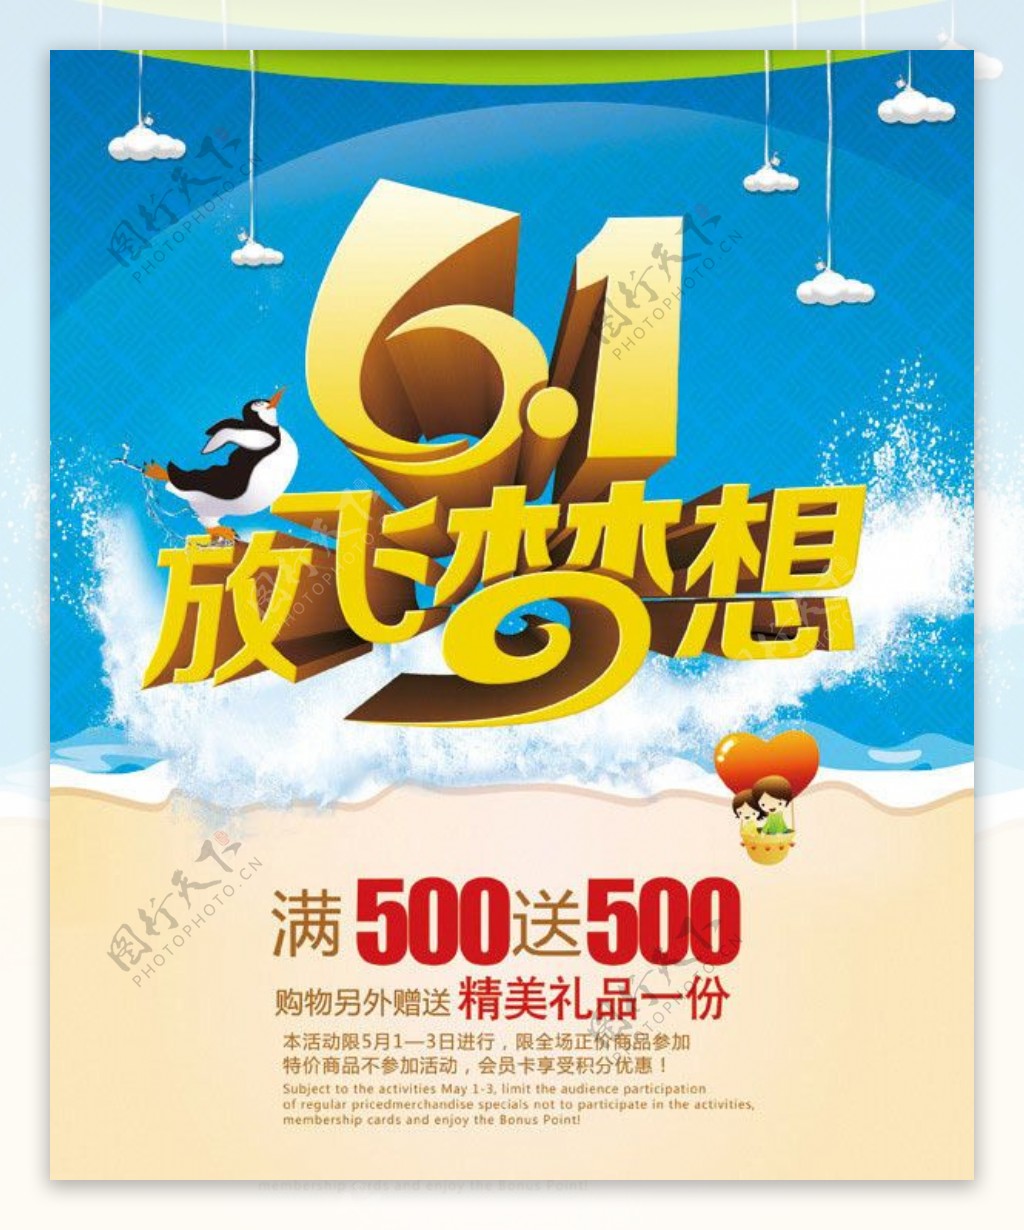 61放飞梦想海报设计PSD素材